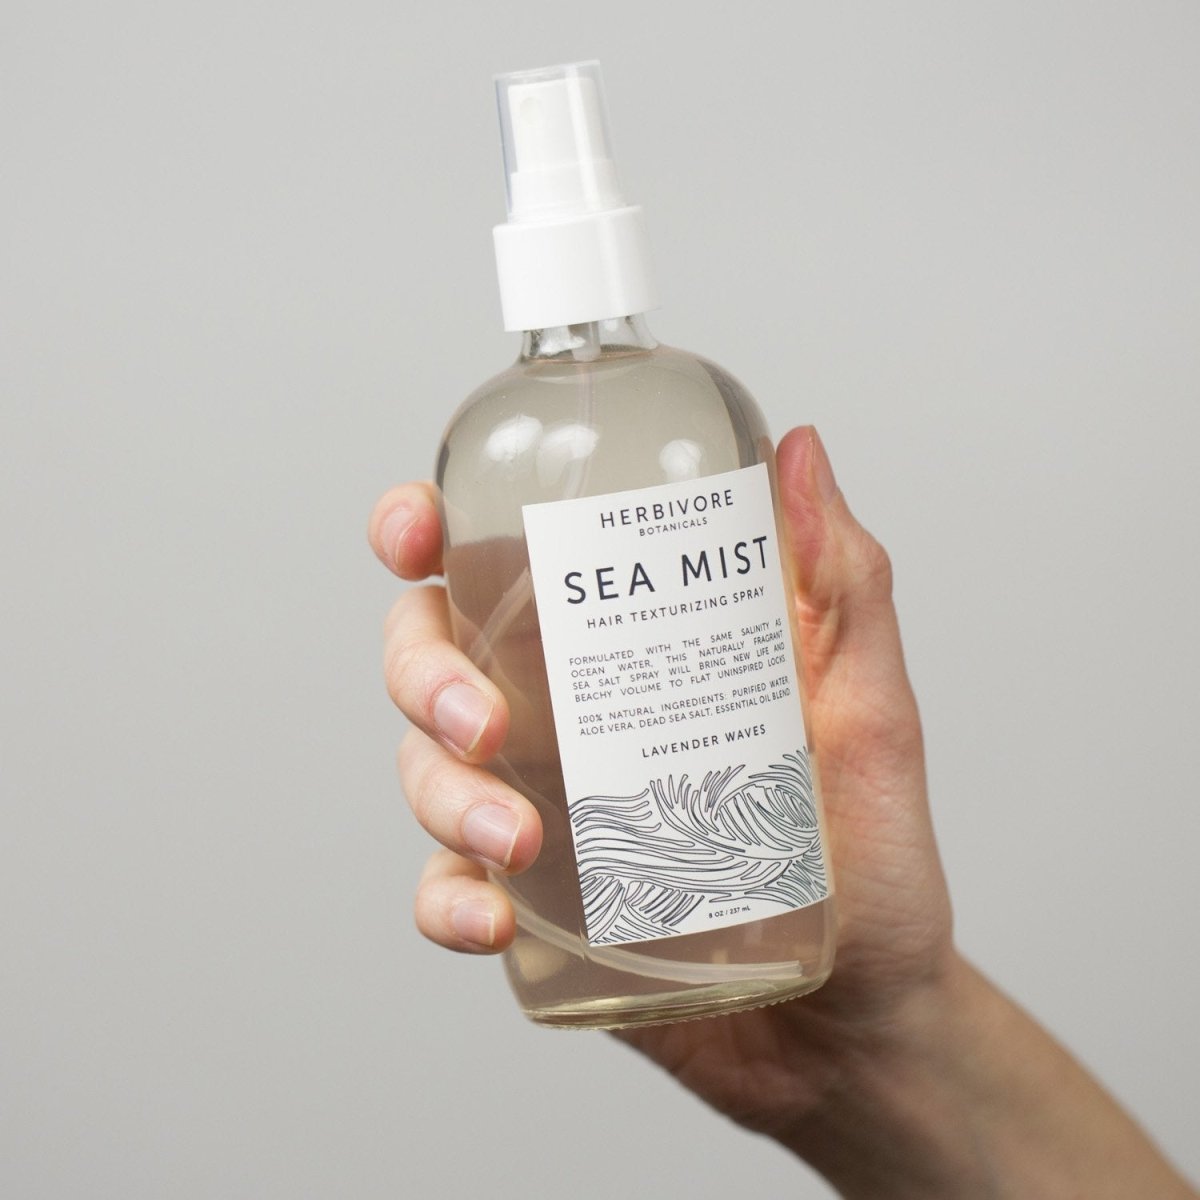 Sea Mist Hair Texturizing Spray